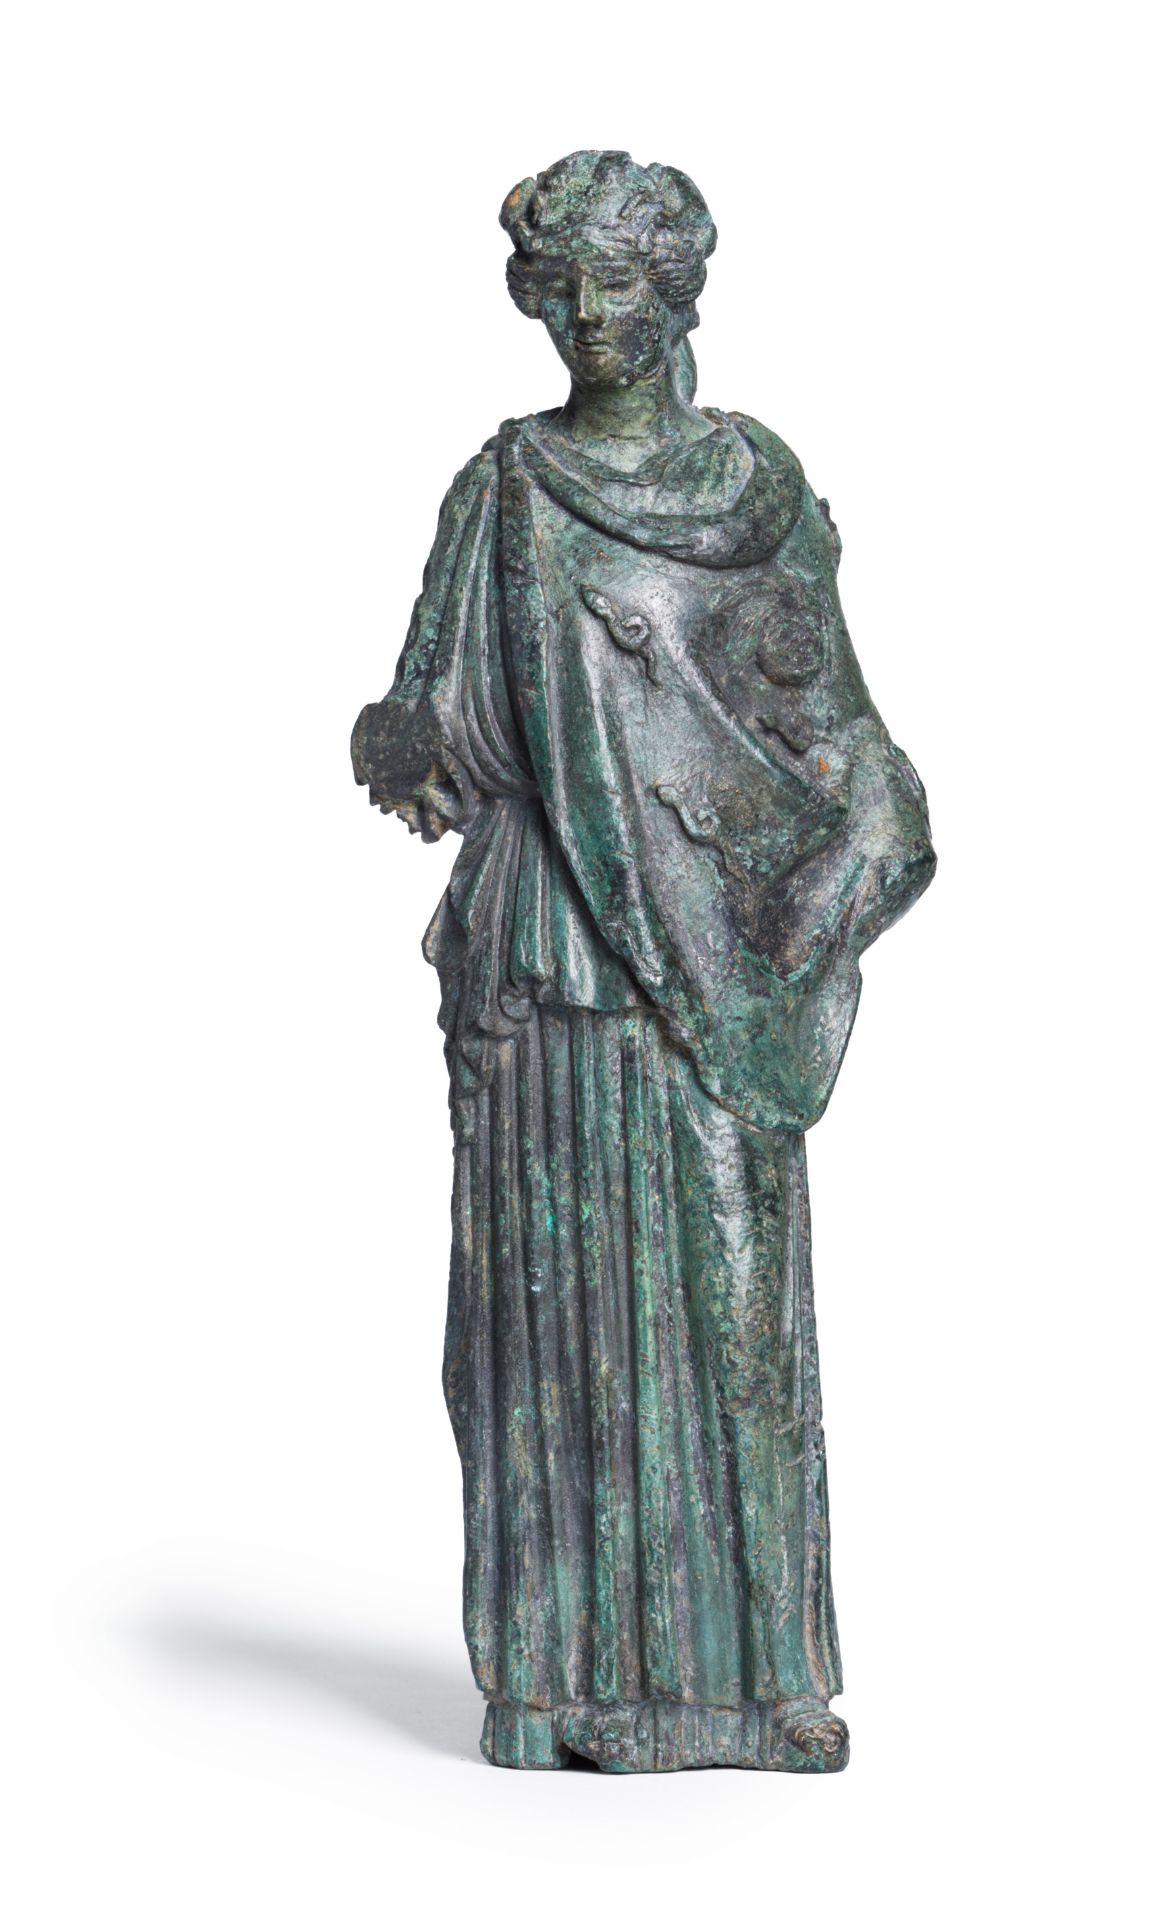 A Roman bronze figure of Athena